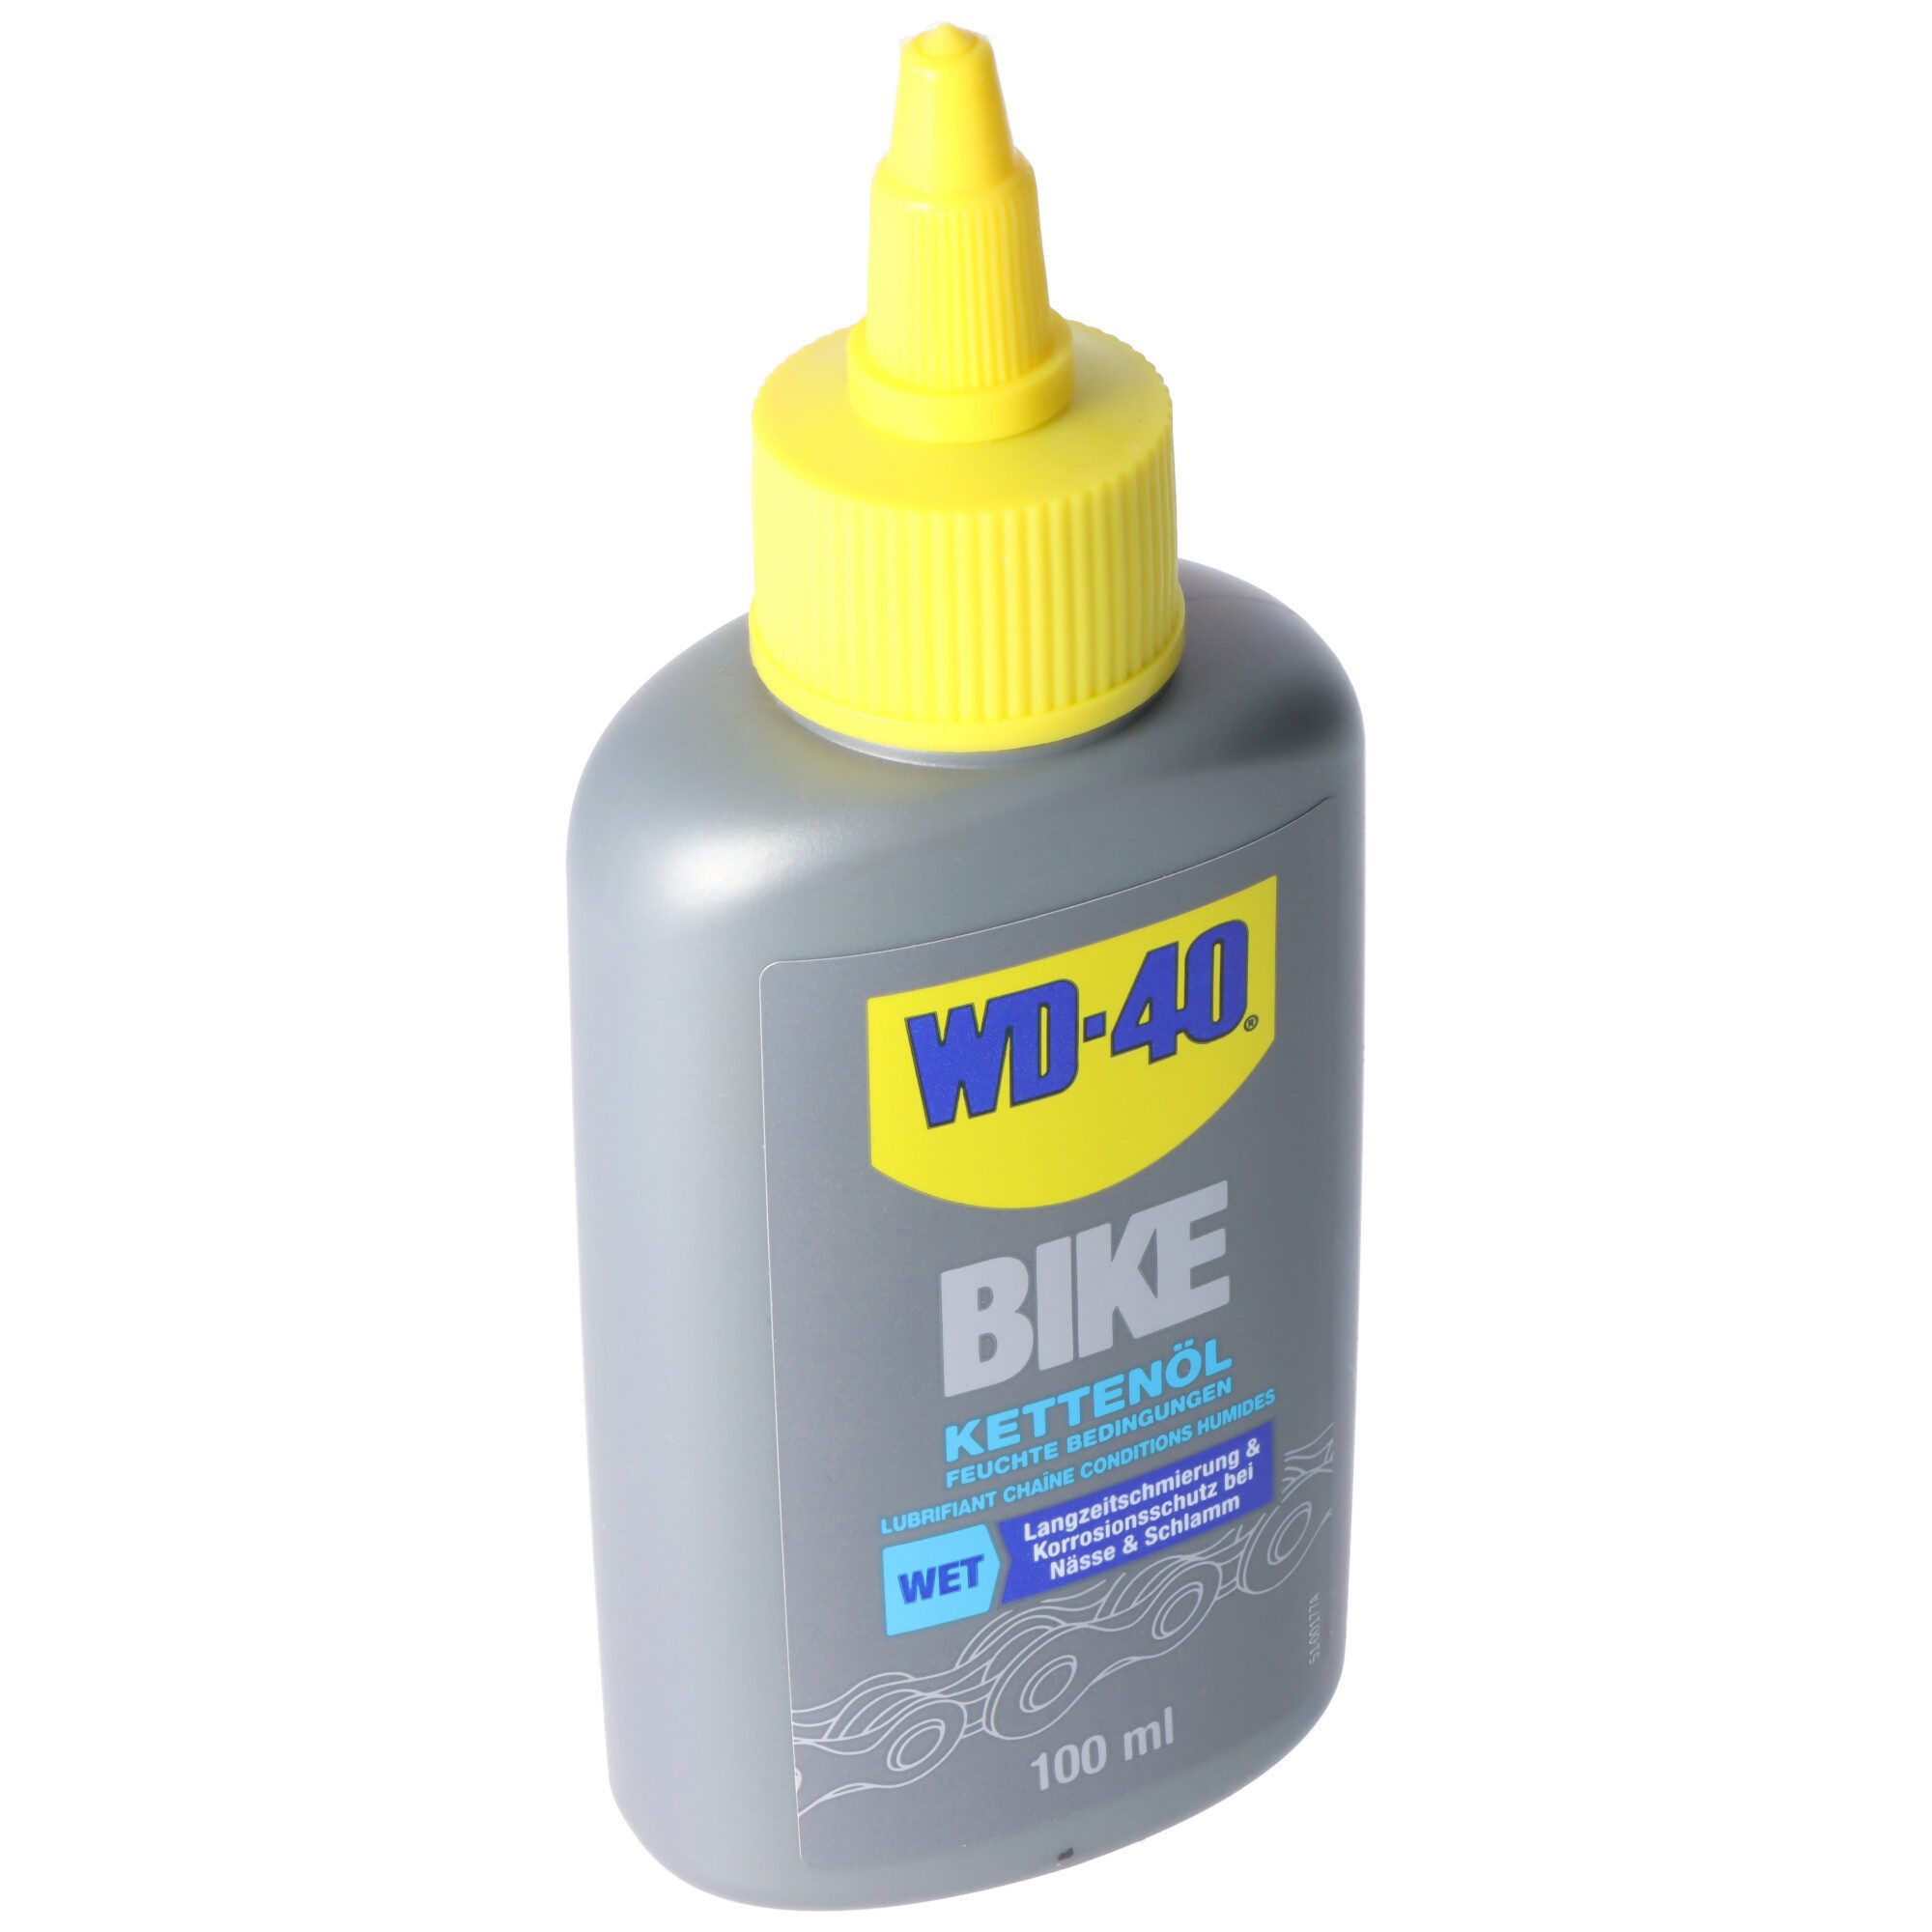 WD-40 Blutdruckmessgerät WD-40 BIKE Kettenöl, Fahrradketten Öl für feuchte Bedinungen, WD-40 W